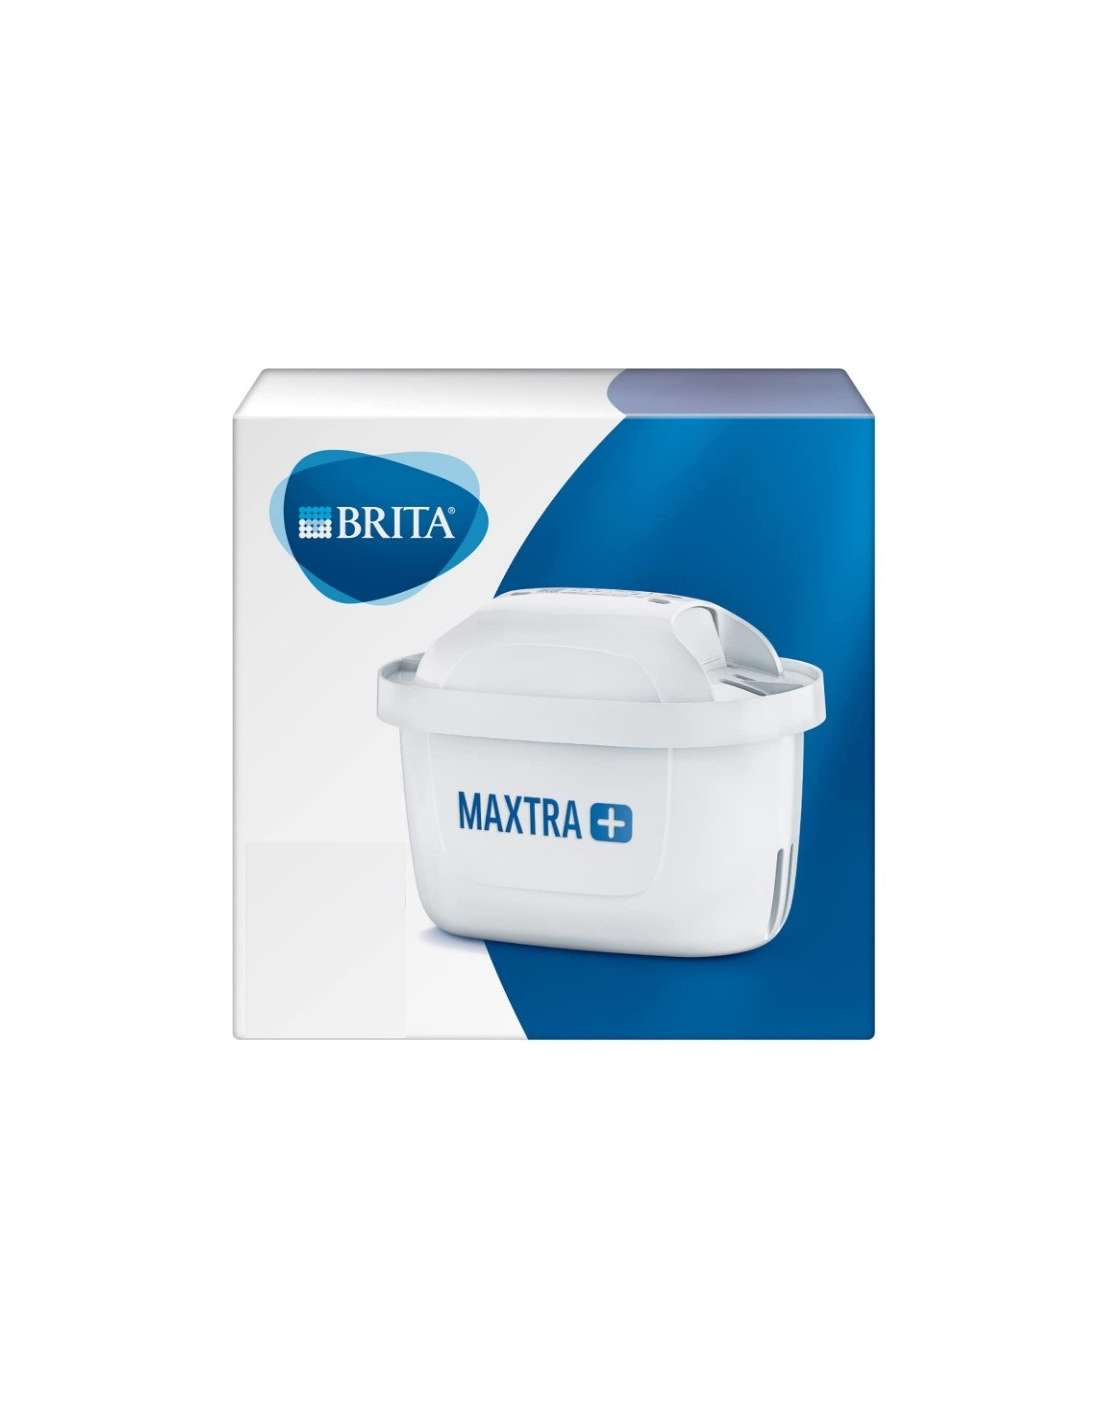 Pack Filtros BRITA Maxtra 4 unidades